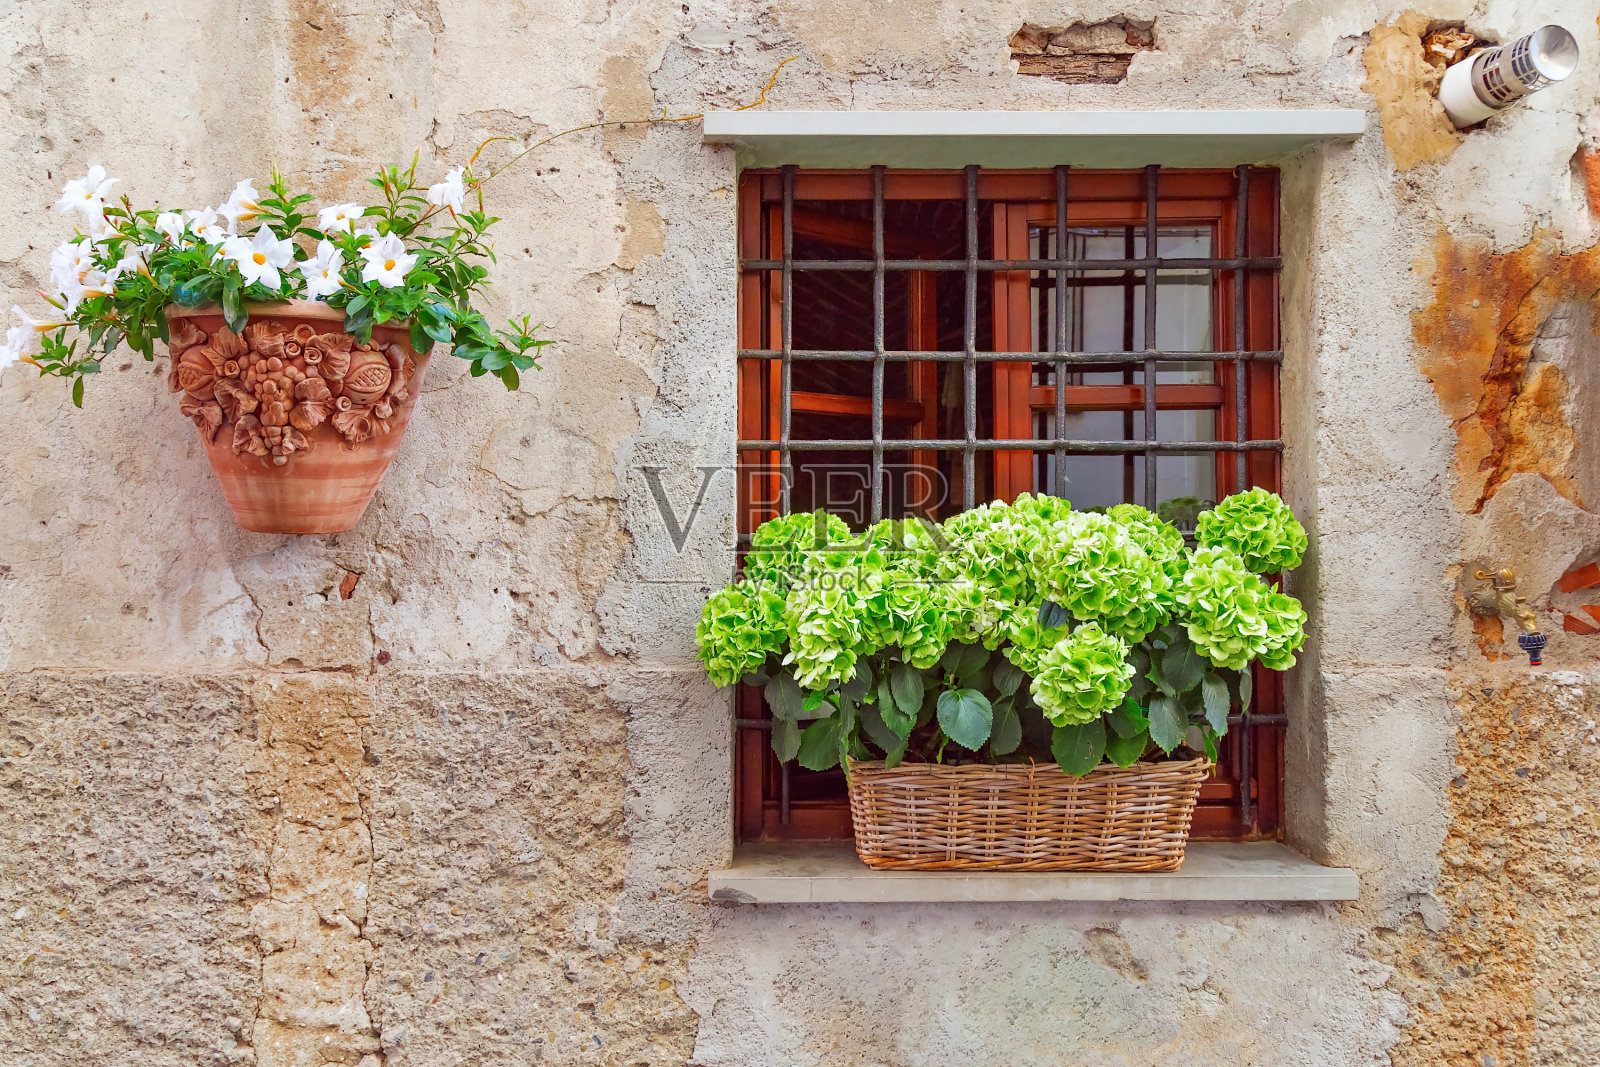 意大利小城市萨尔扎纳美丽的老房子墙。北部意大利利古利亚。石墙上舒适的图案。窗户上装饰着鲜花。建筑墙上挂着花的陶罐。照片摄影图片